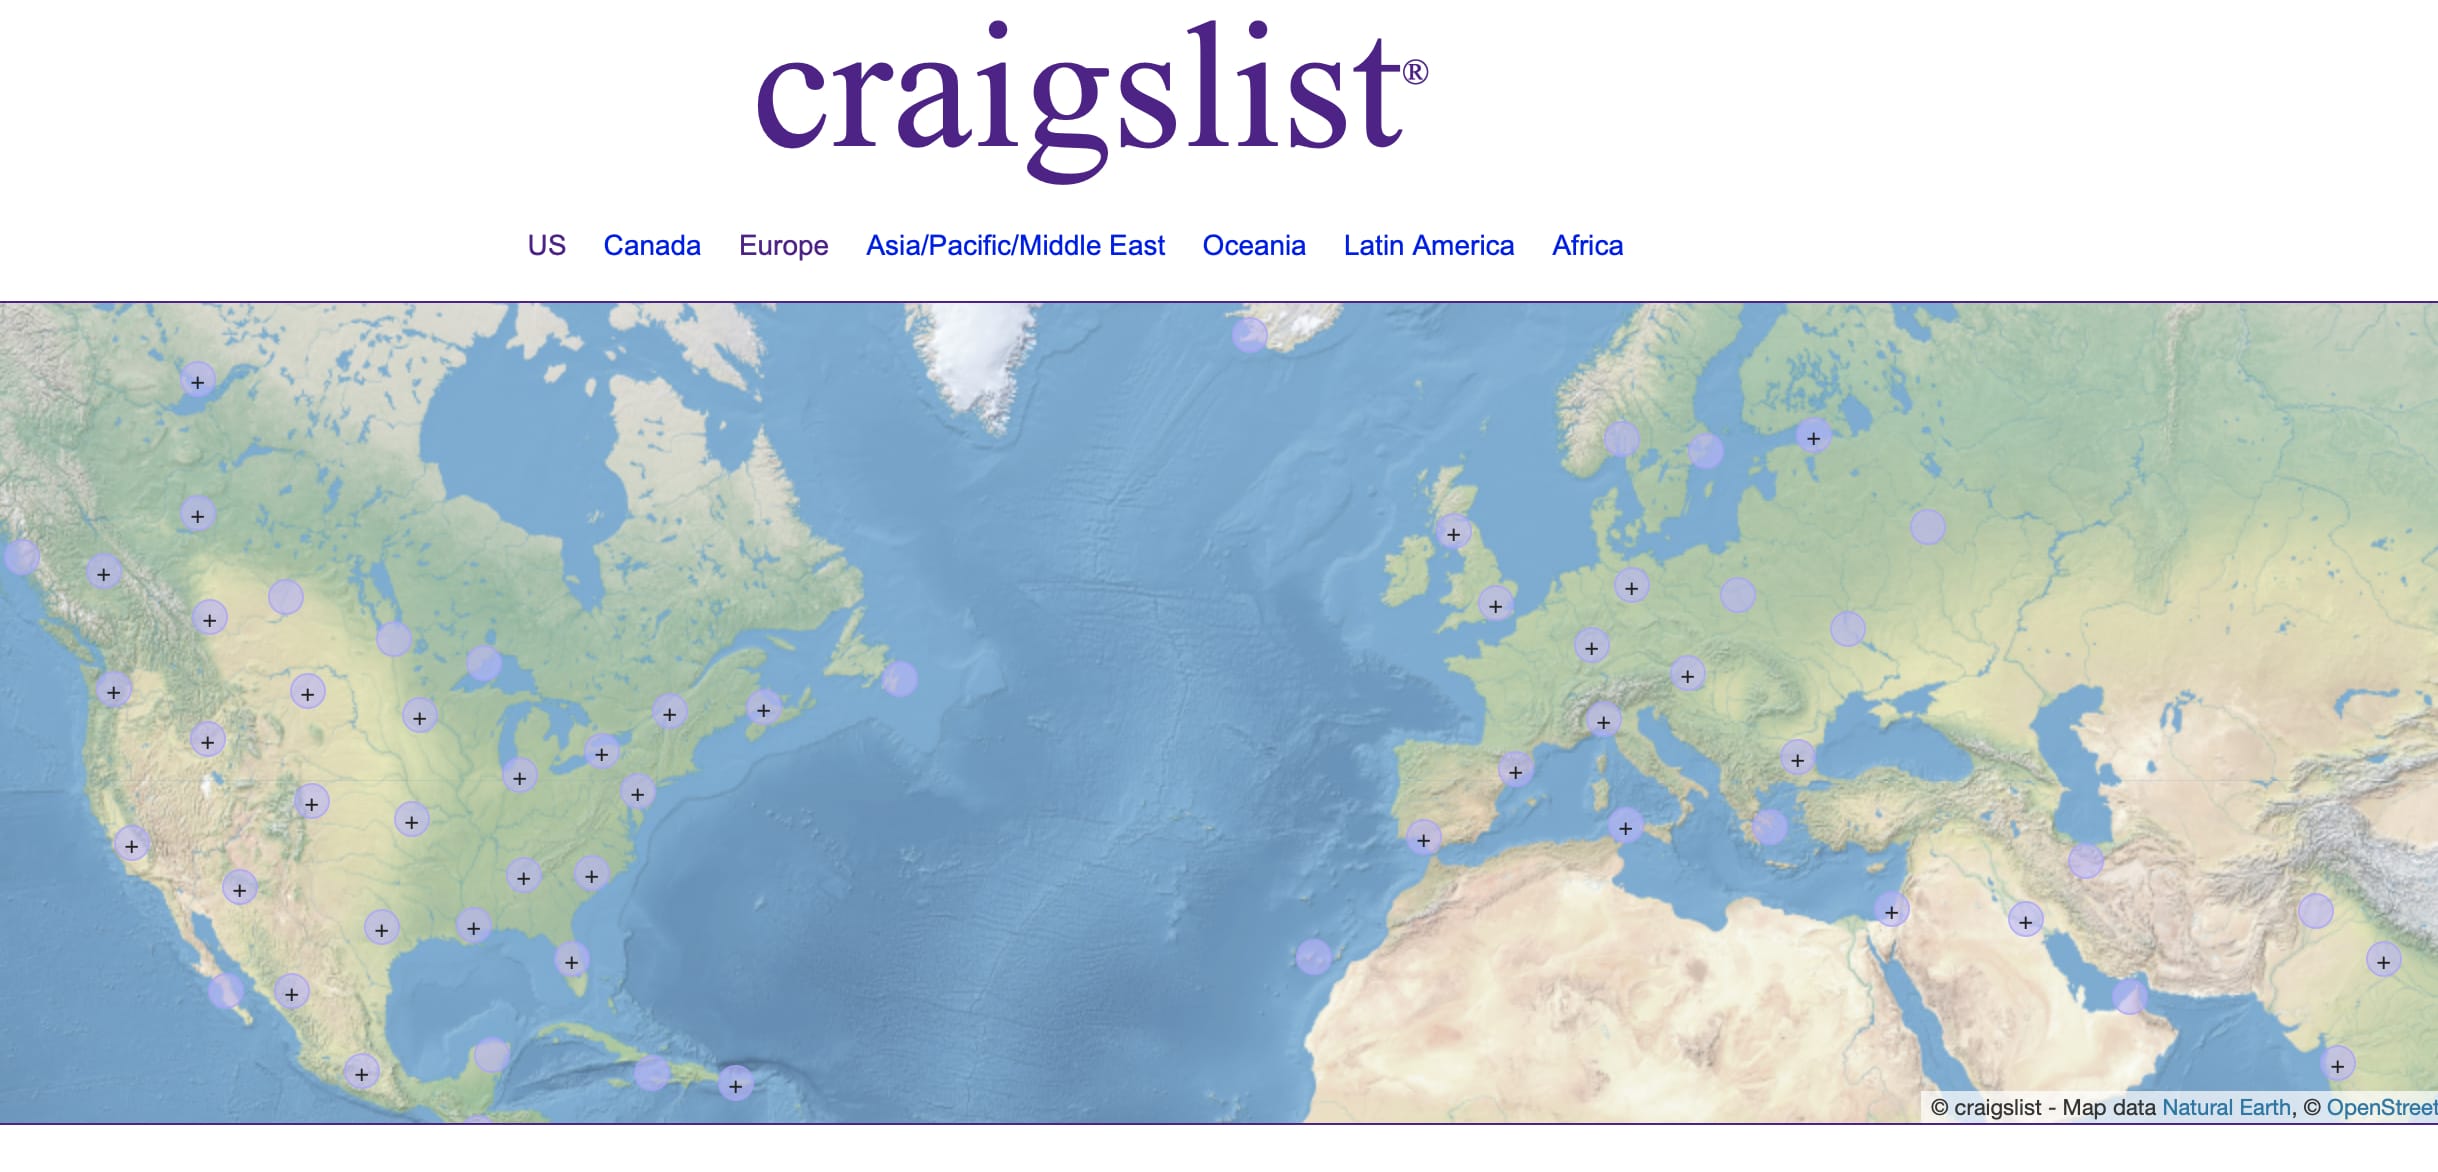 Craigslist homepage